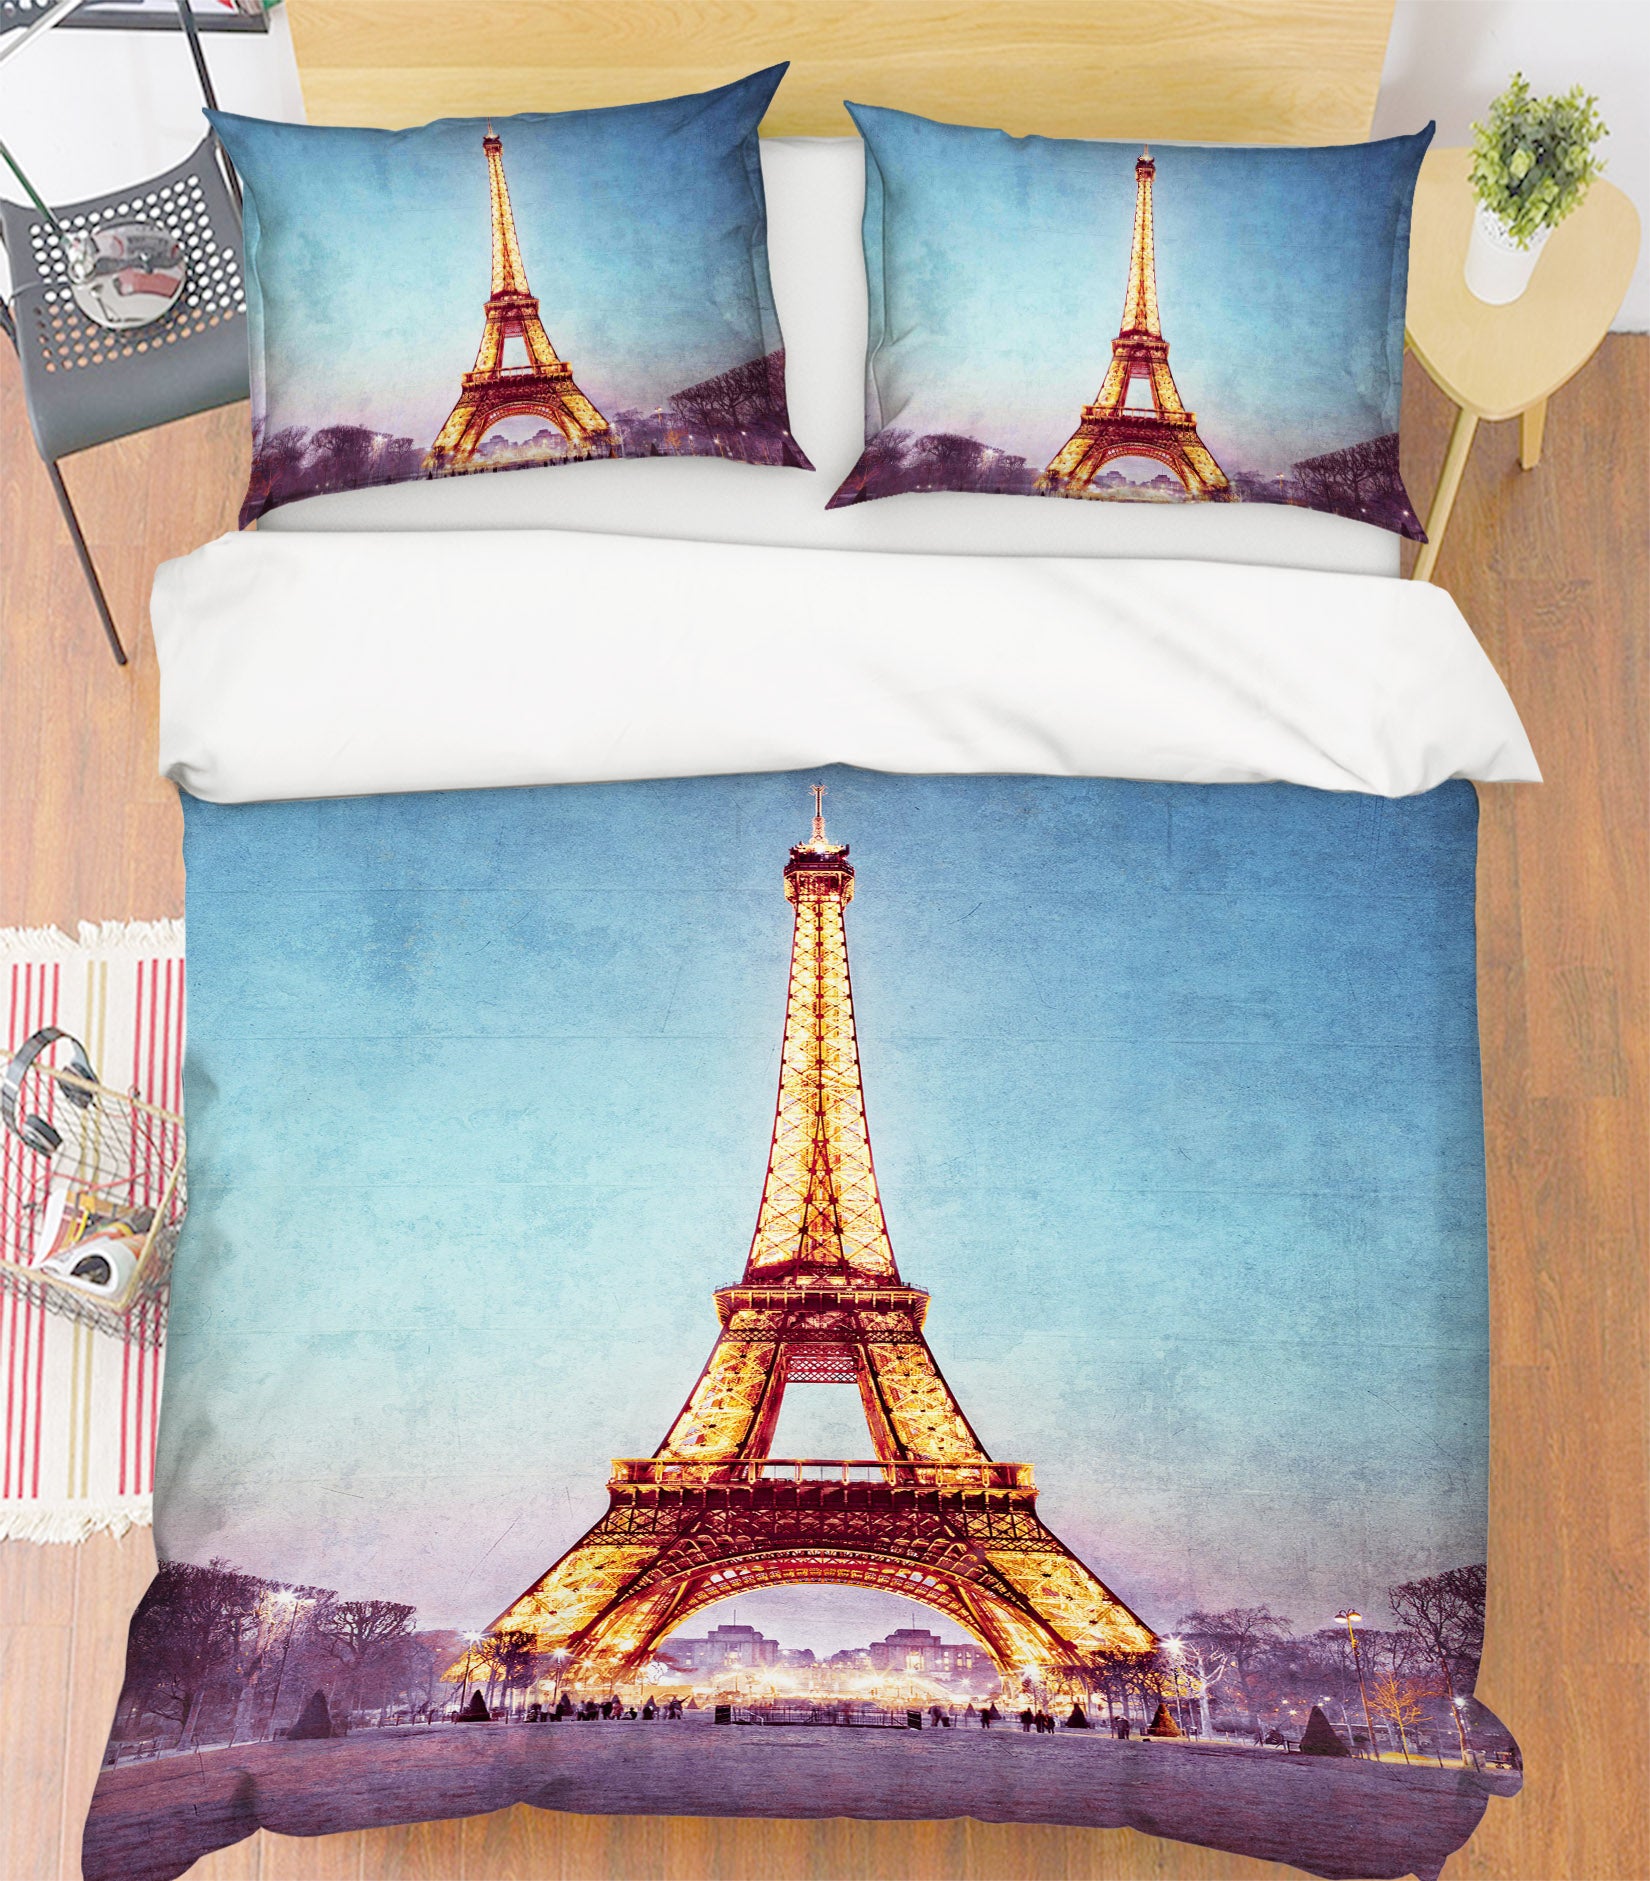 3D Eiffel Tower 85100 Assaf Frank Bedding Bed Pillowcases Quilt